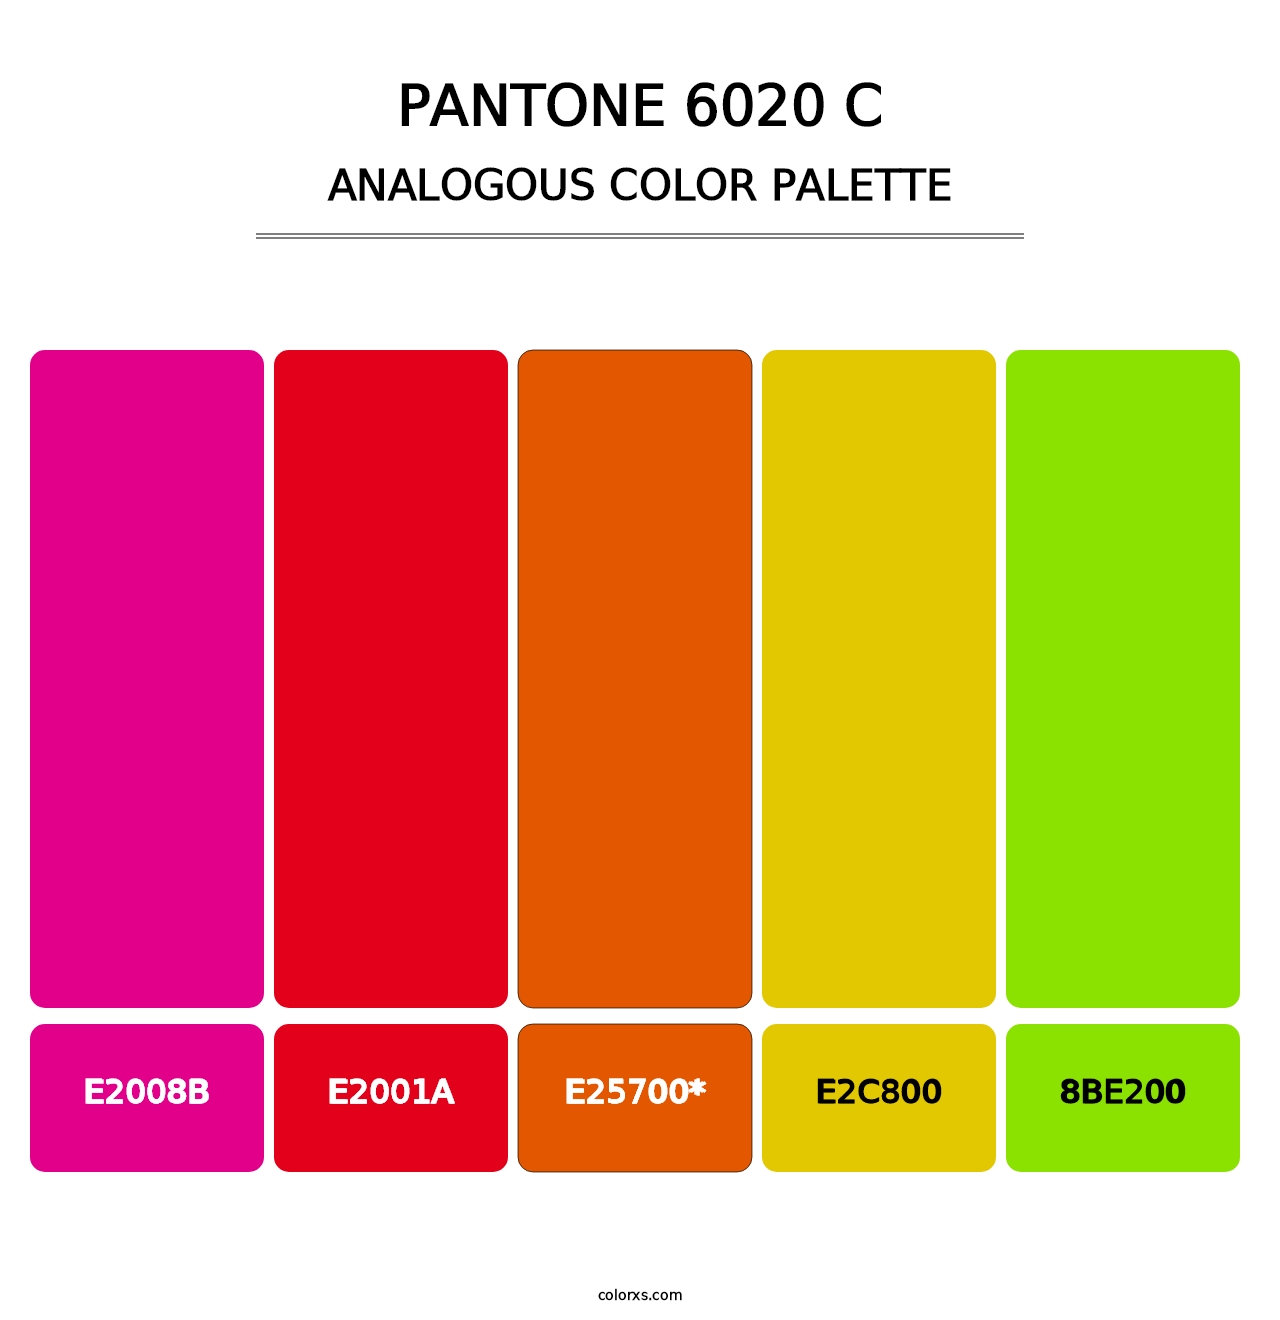 PANTONE 6020 C - Analogous Color Palette